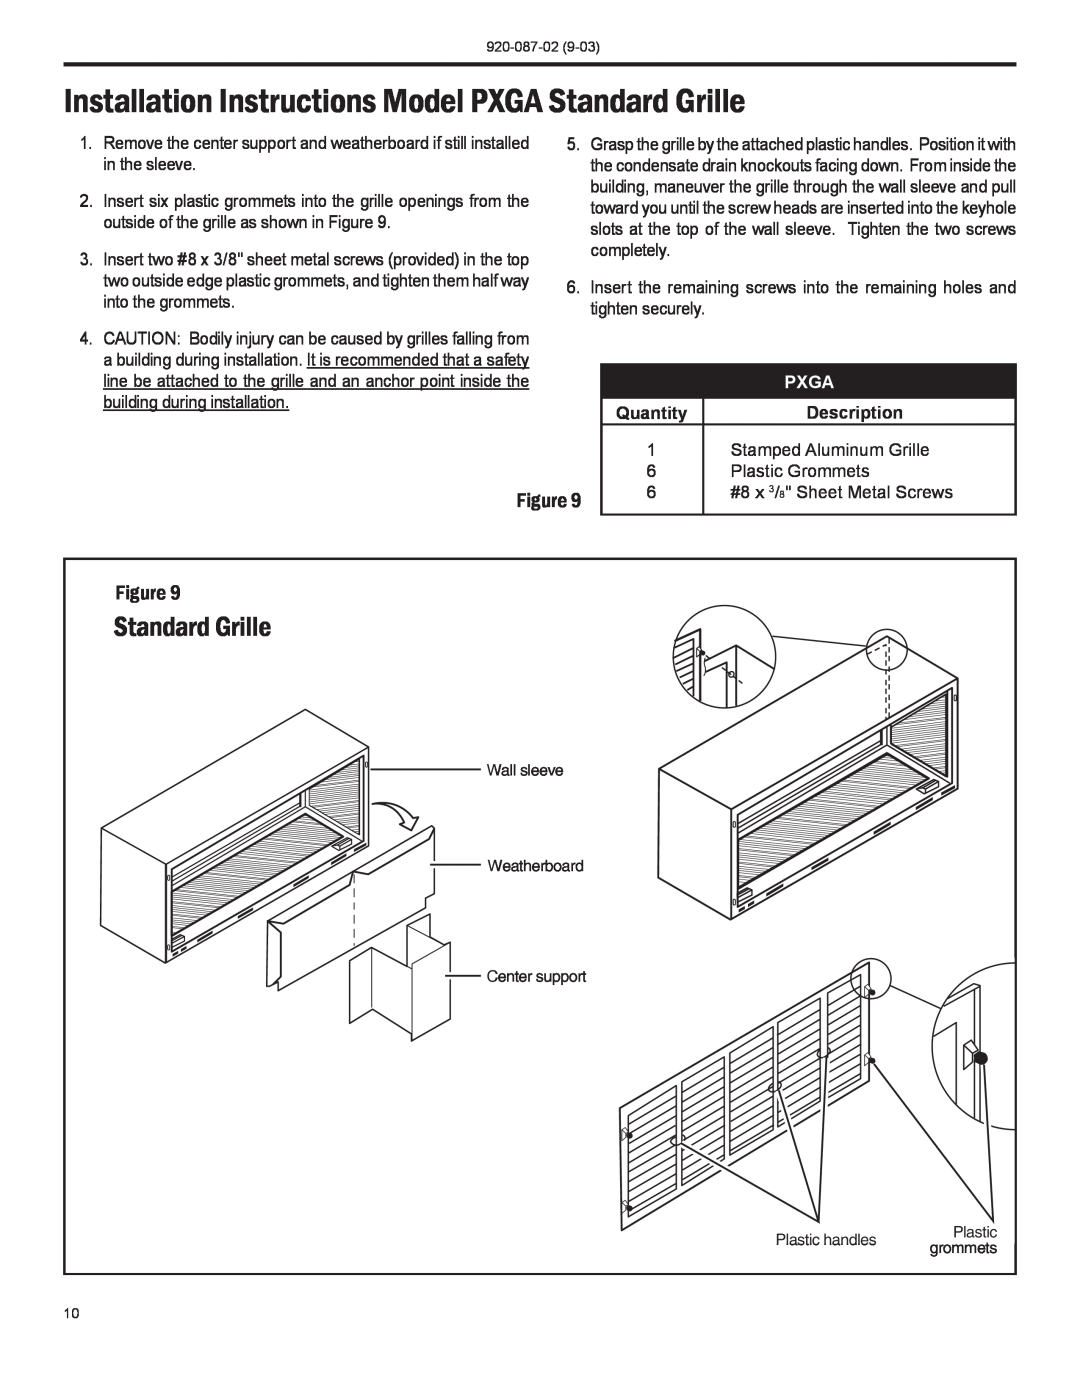 Friedrich PTAC operation manual Standard Grille, Quantity, Description, Pxga 